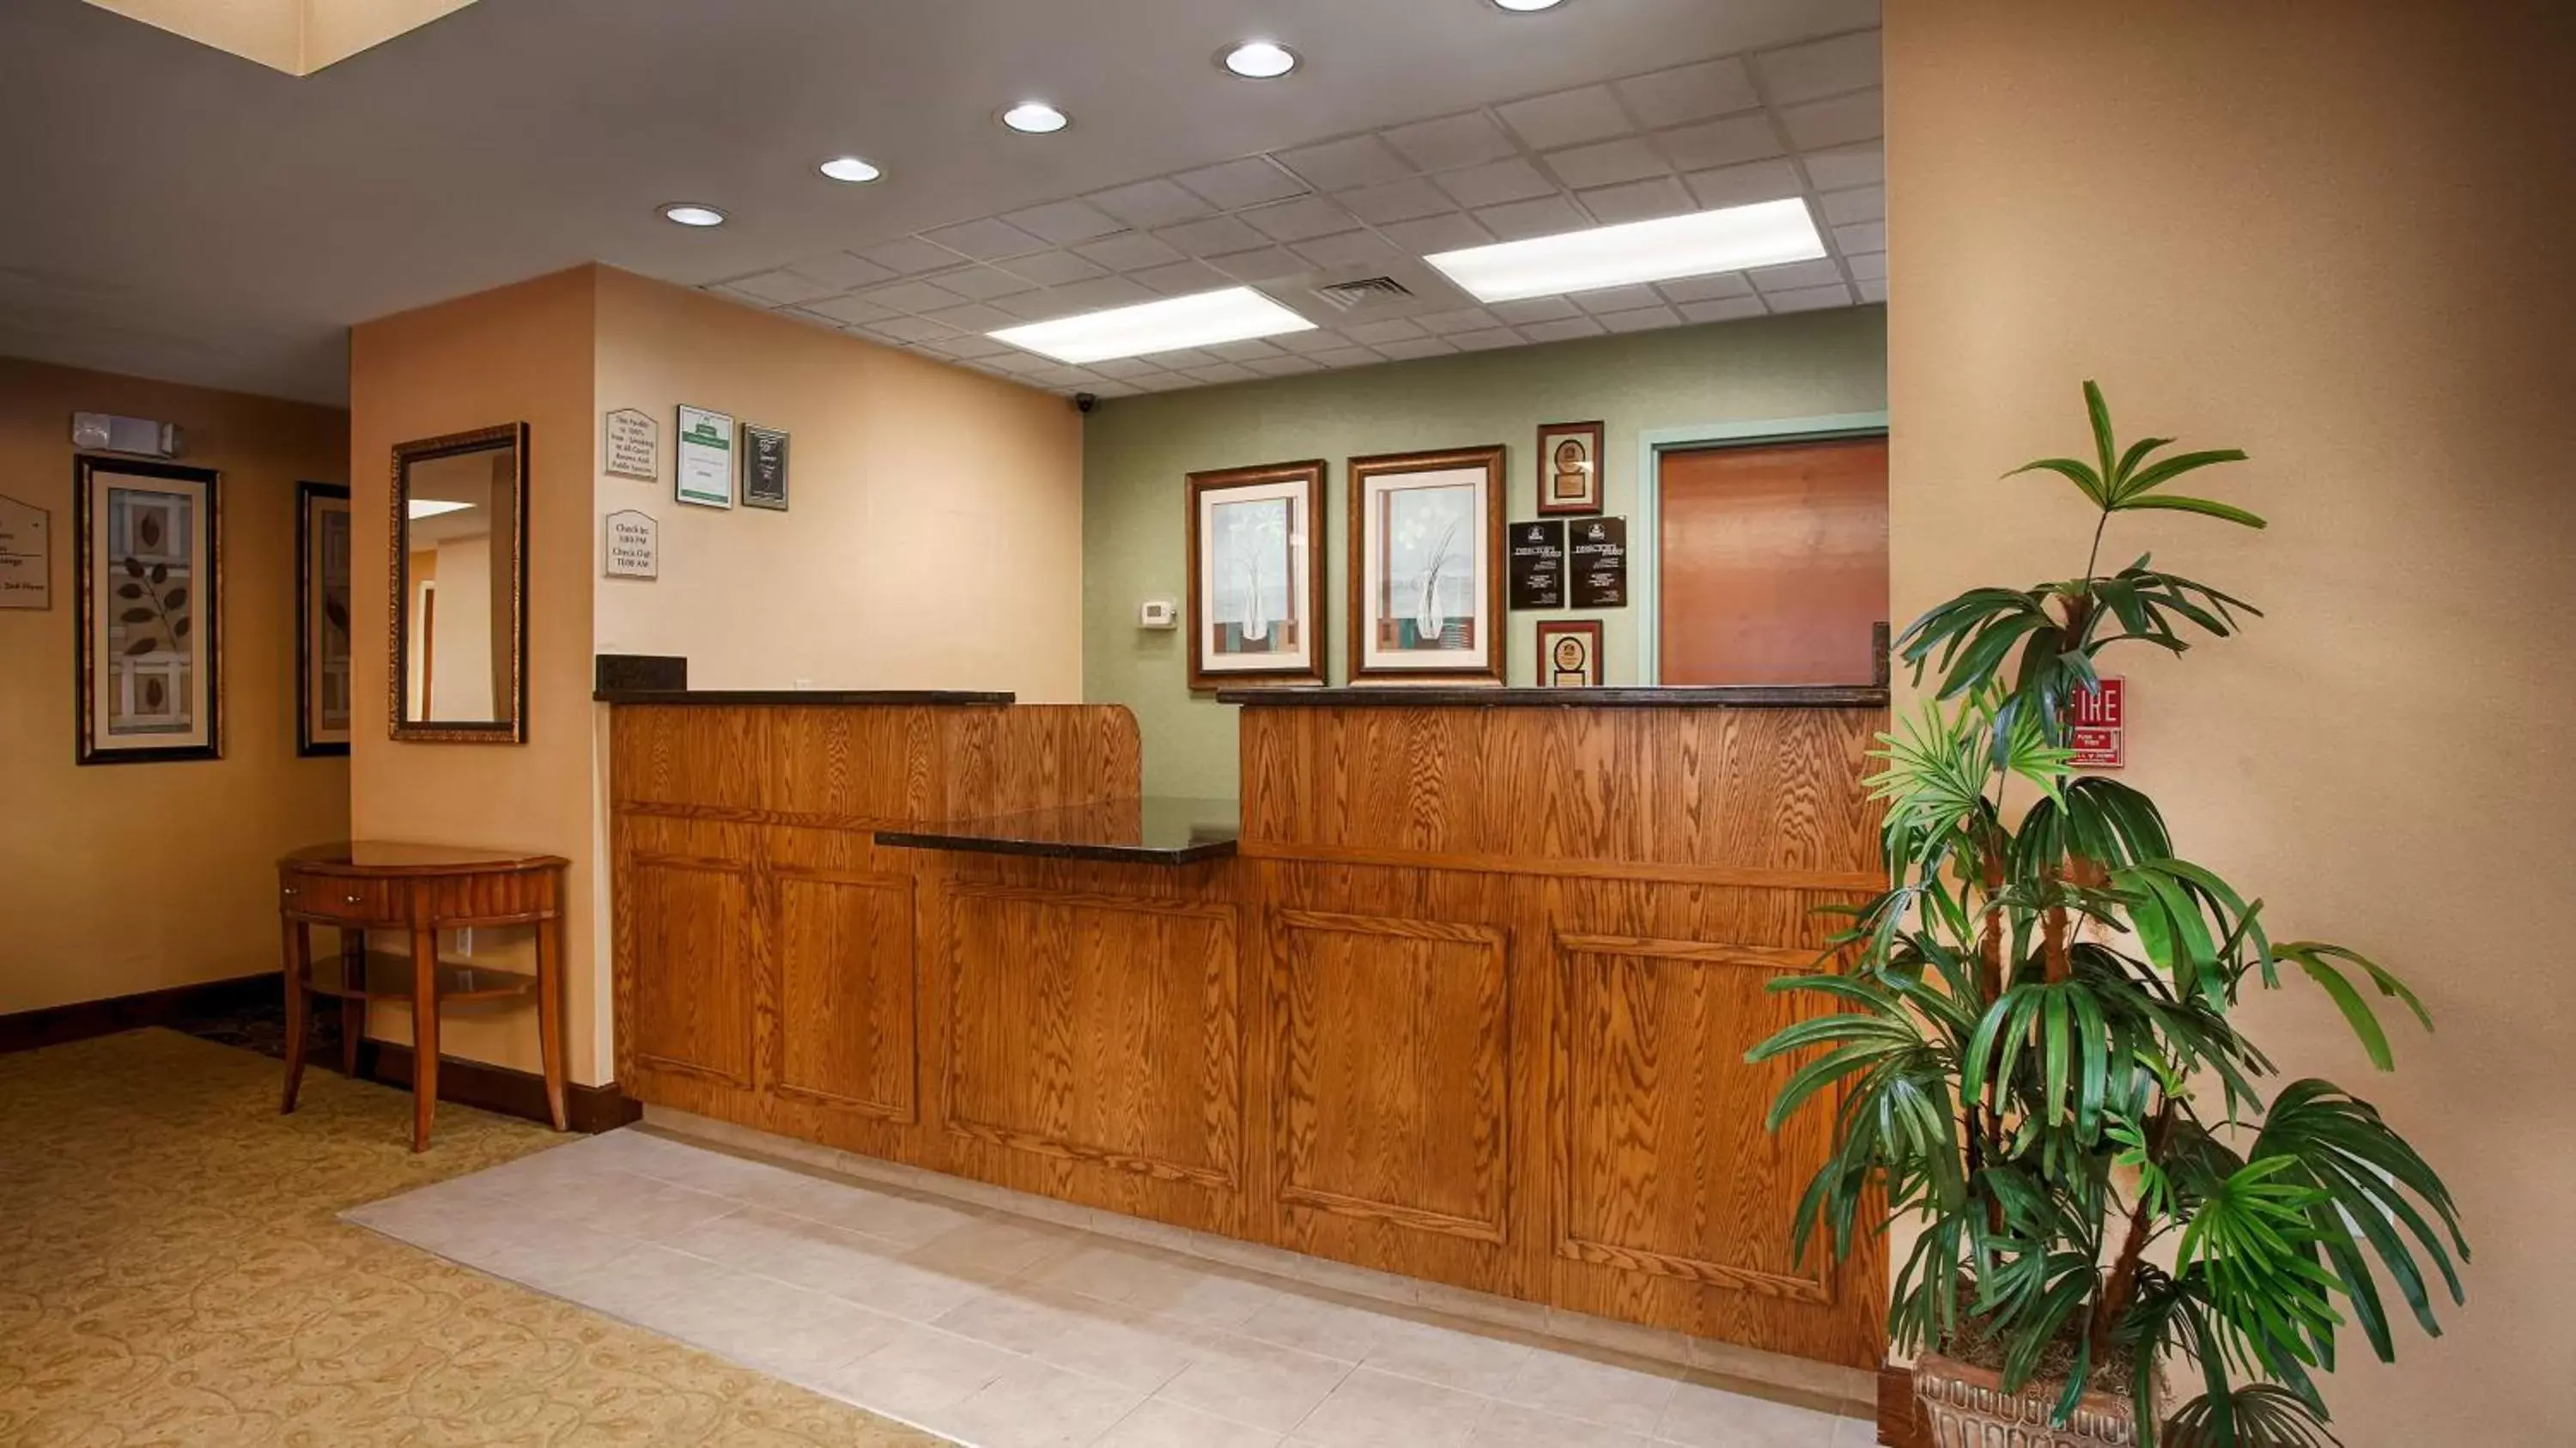 Lobby or reception, Lobby/Reception in Best Western Plus Edison Inn